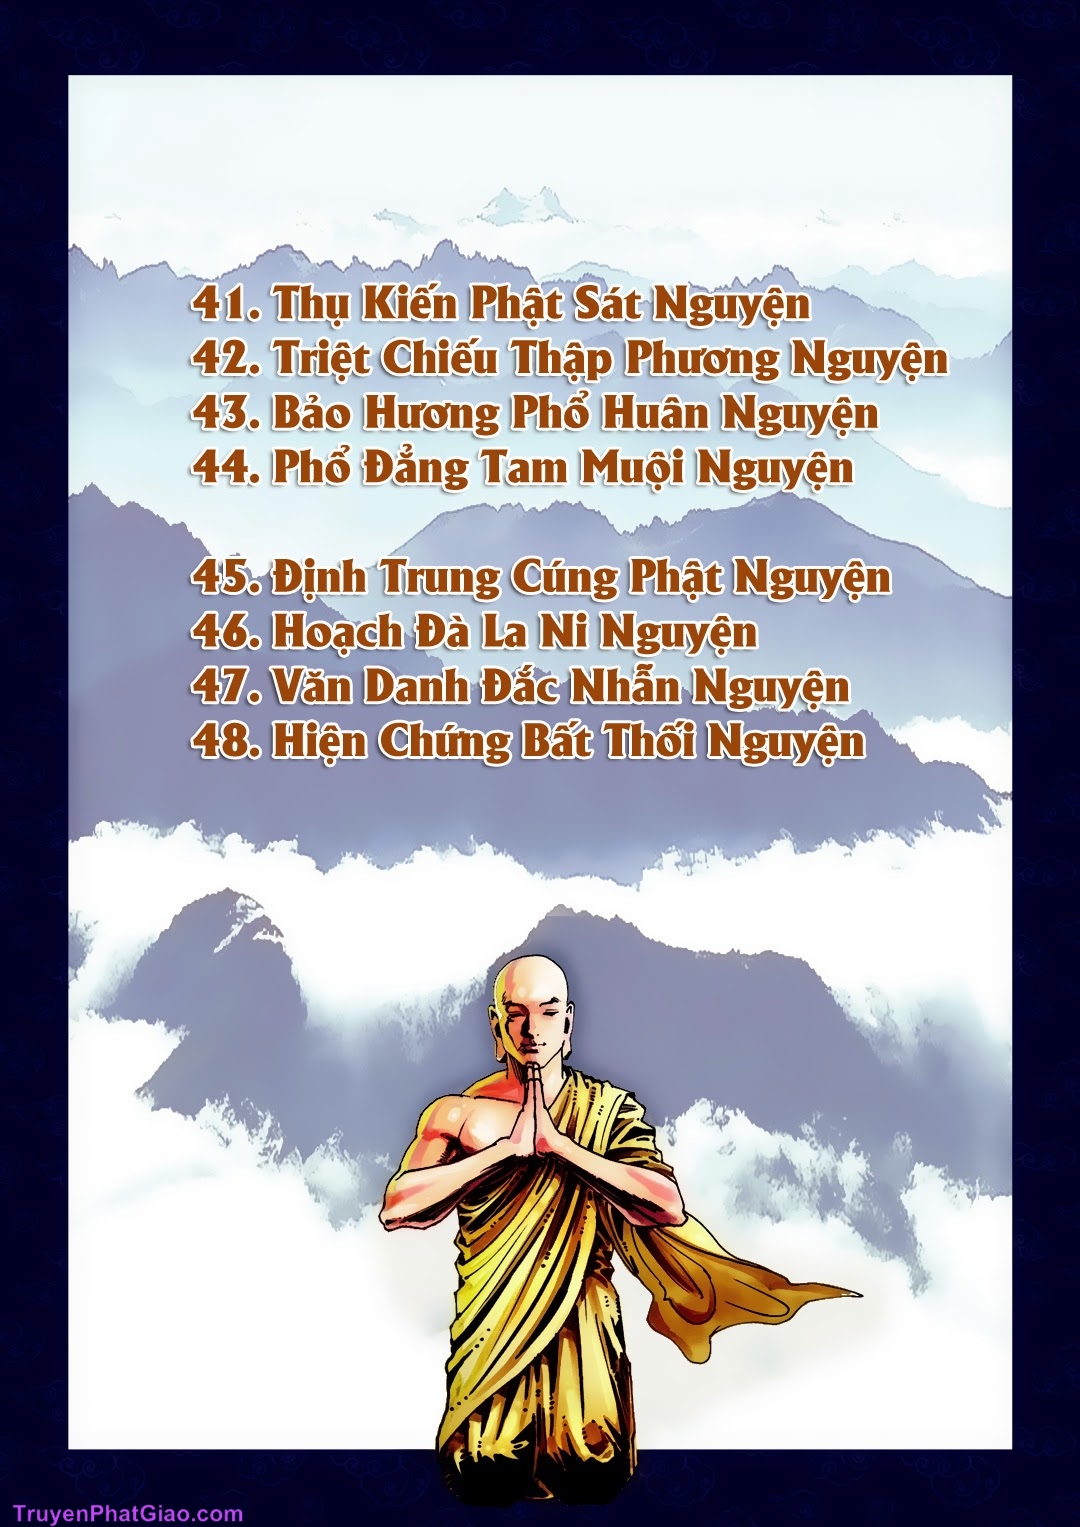 Truyện Tranh Phật Giáo - A Di Đà Phật Truyện page 18